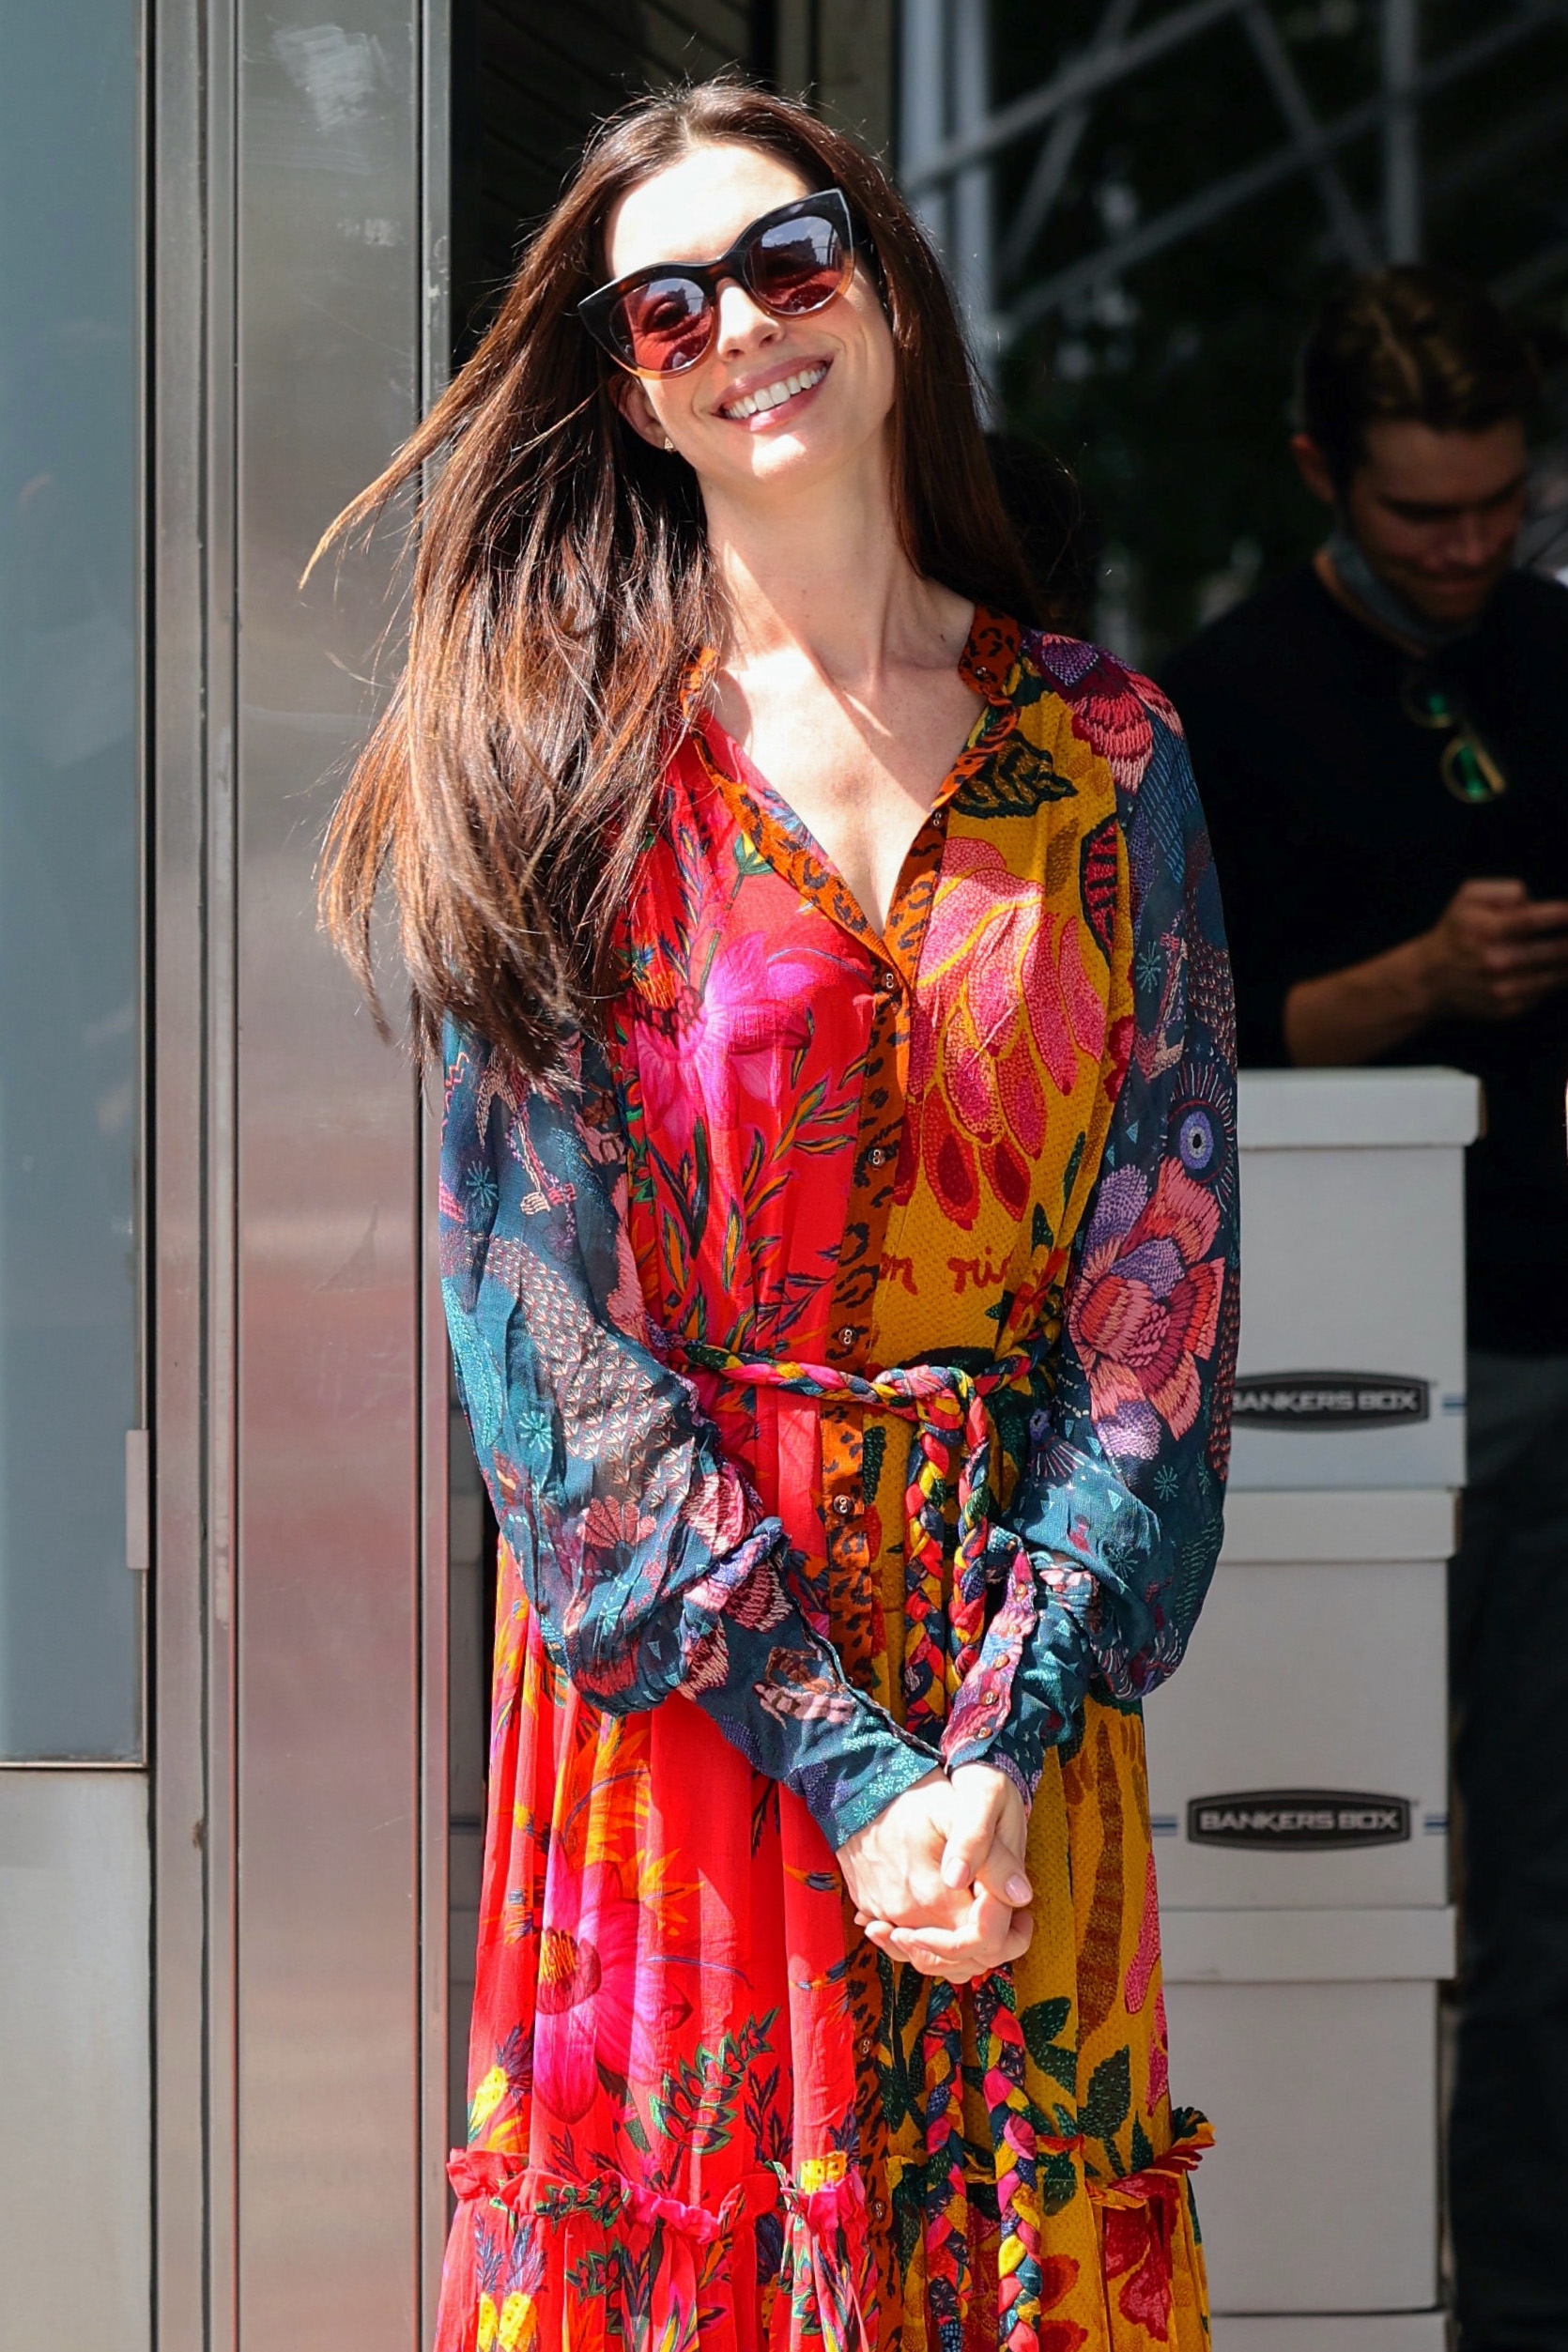 Día de trabajo. Anne Hathaway fue fotografiada en el set de filmación de "WeCrashed", cuyo rodaje se lleva a cabo en Manhattan, Nueva York. La actriz lució un vestido estampado de varios colores de manga larga